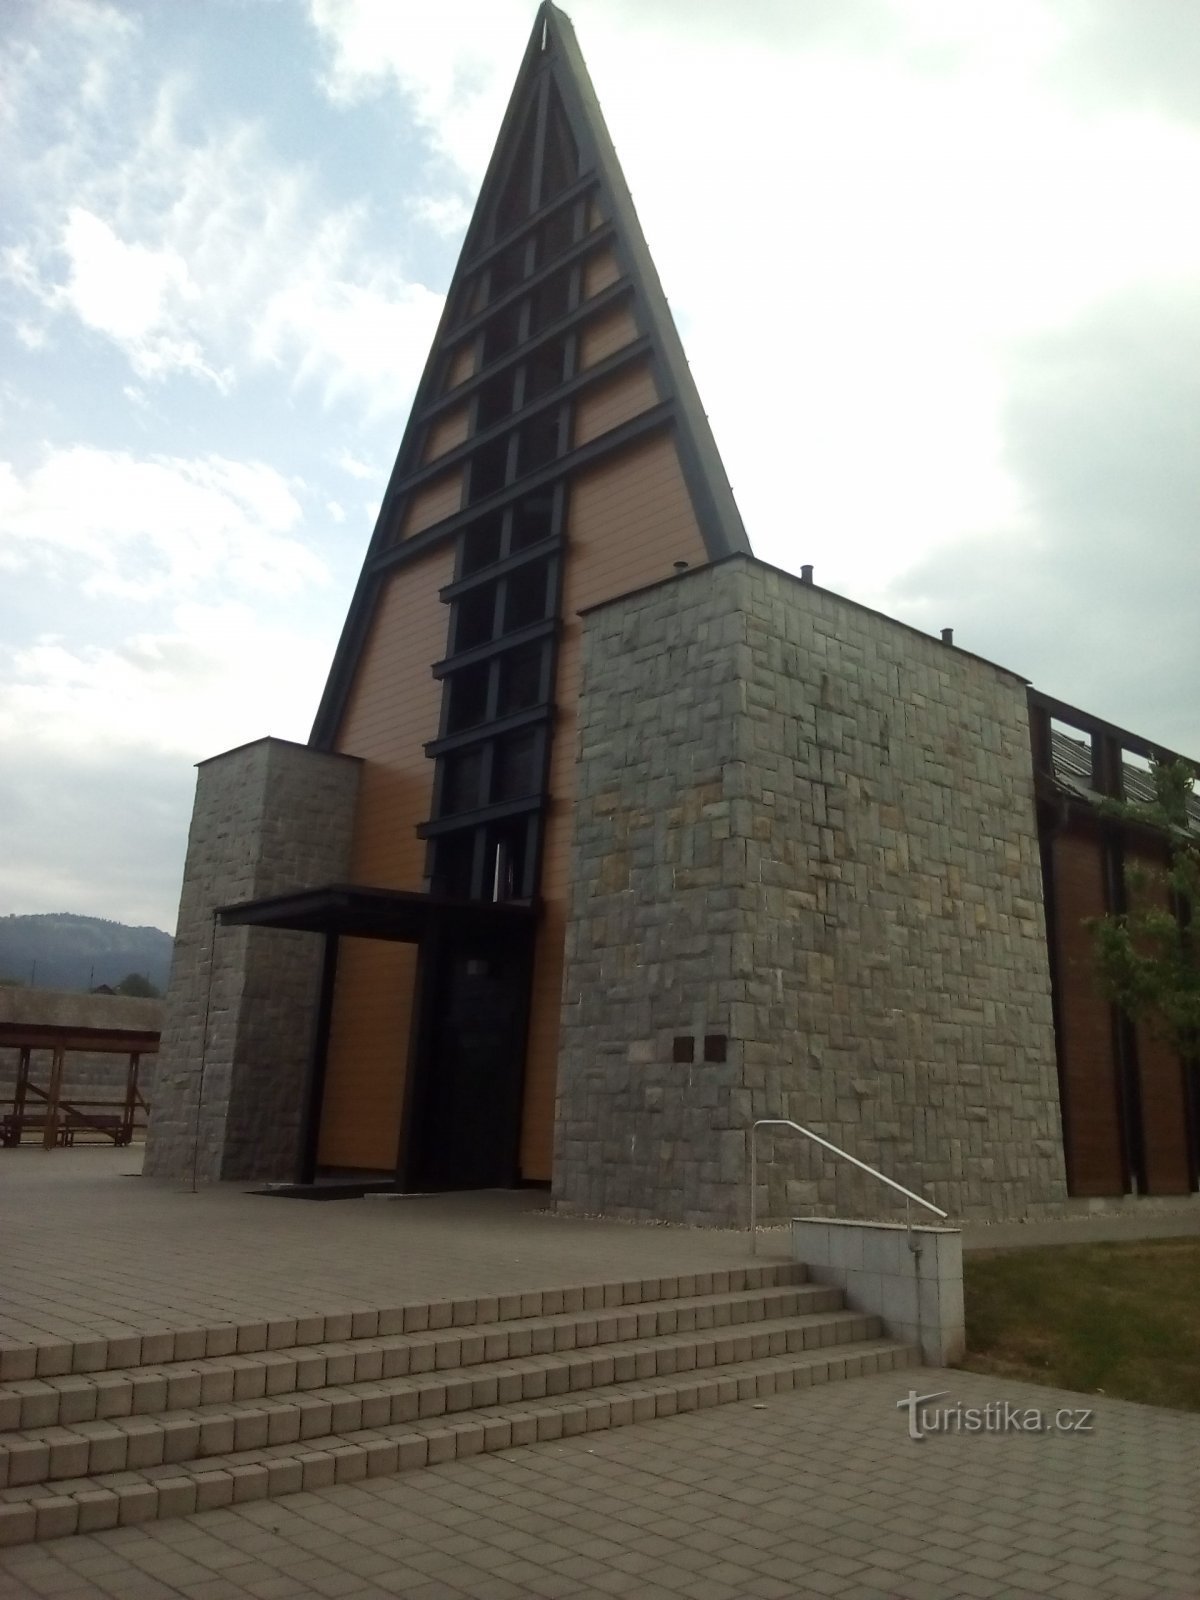 SCEAV-kyrkan i Písek